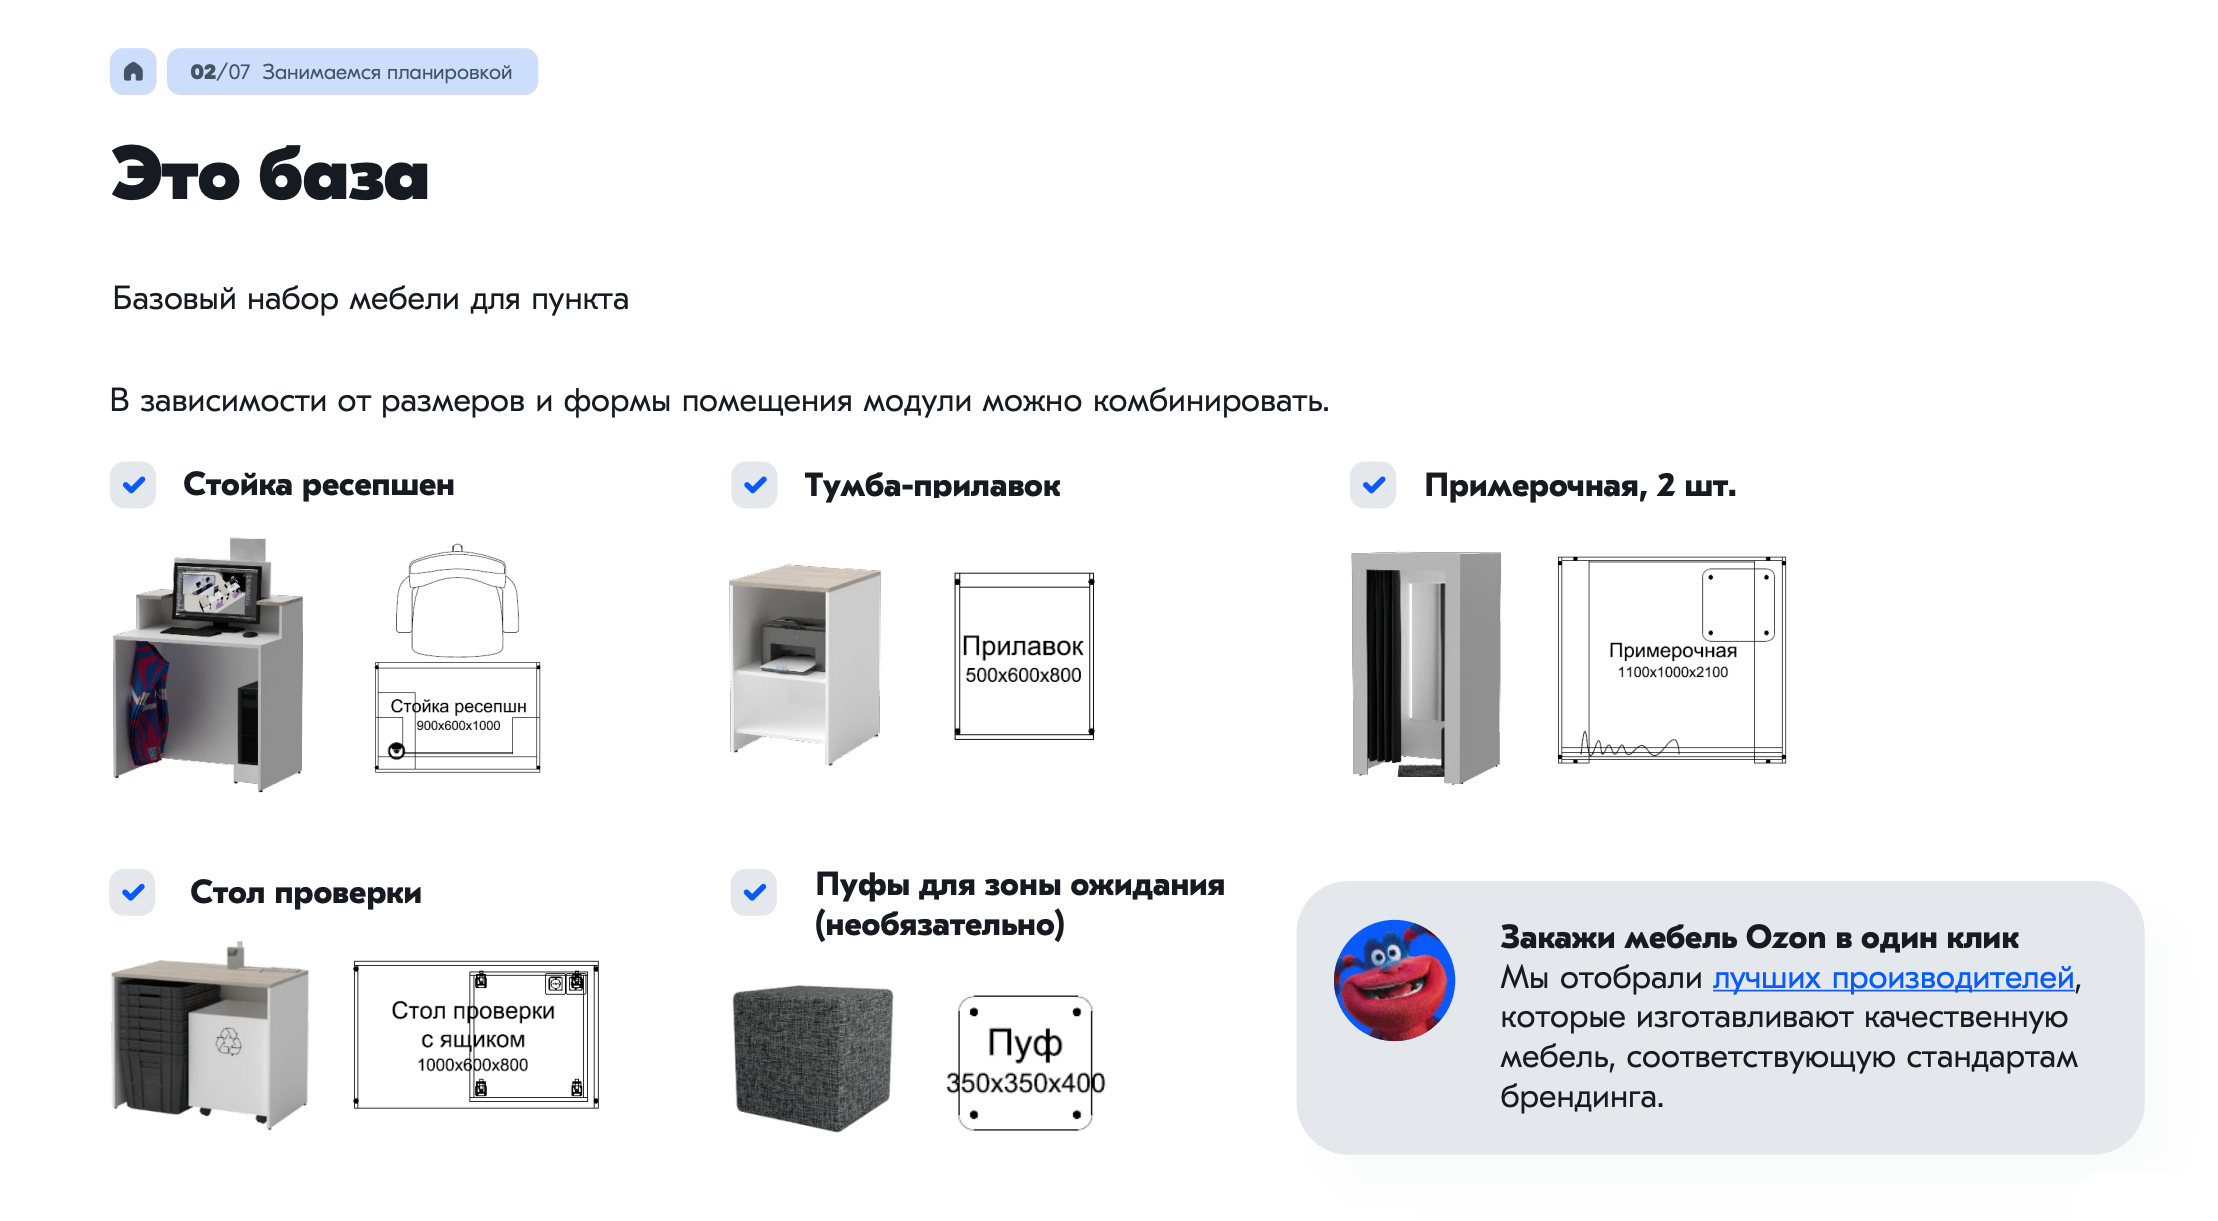 Базовый набор мебели для пунктов выдачи «Озона». Источник: cdn1.ozone.ru